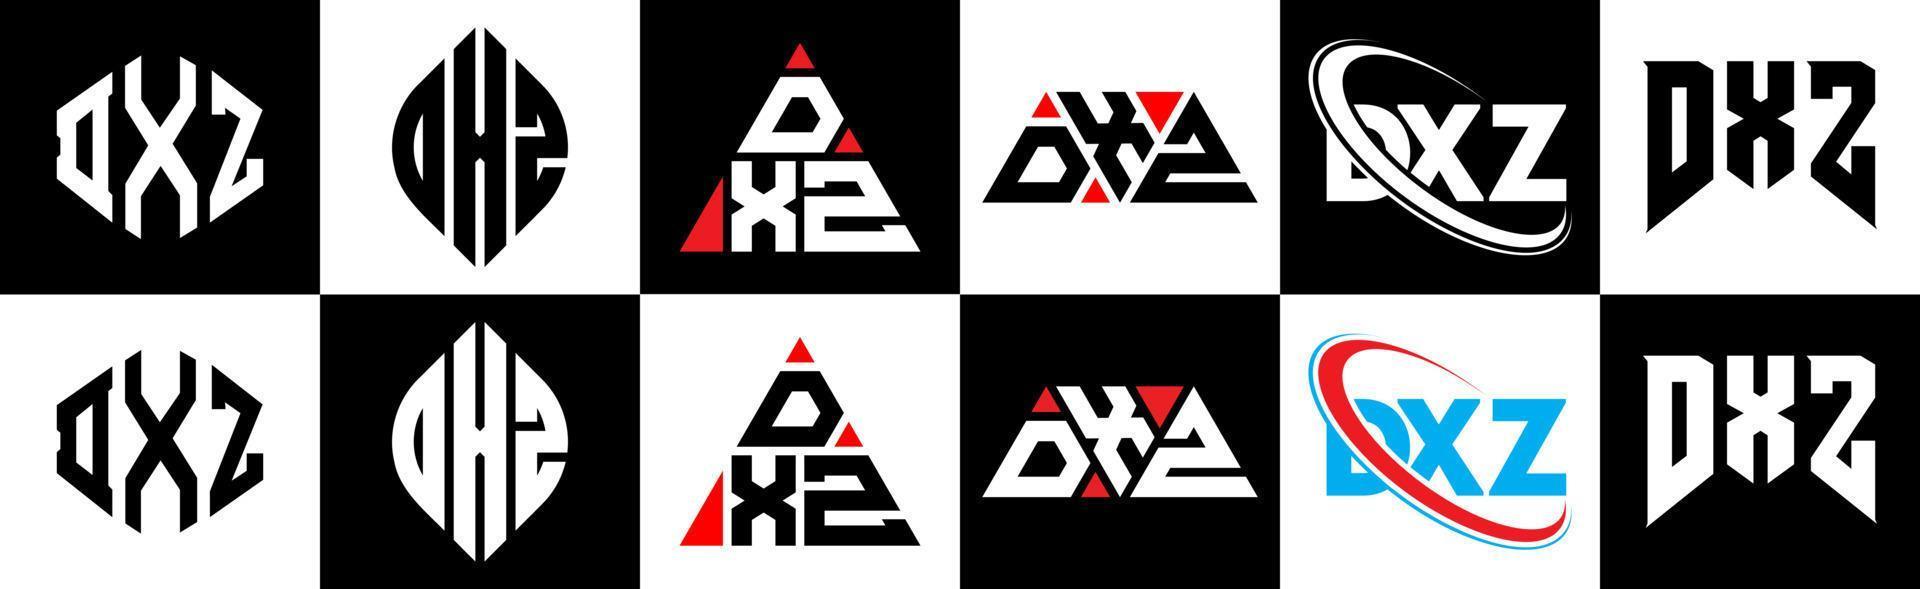 dxz-Buchstaben-Logo-Design in sechs Stilen. dxz Polygon, Kreis, Dreieck, Sechseck, flacher und einfacher Stil mit schwarz-weißem Buchstabenlogo in einer Zeichenfläche. dxz minimalistisches und klassisches Logo vektor